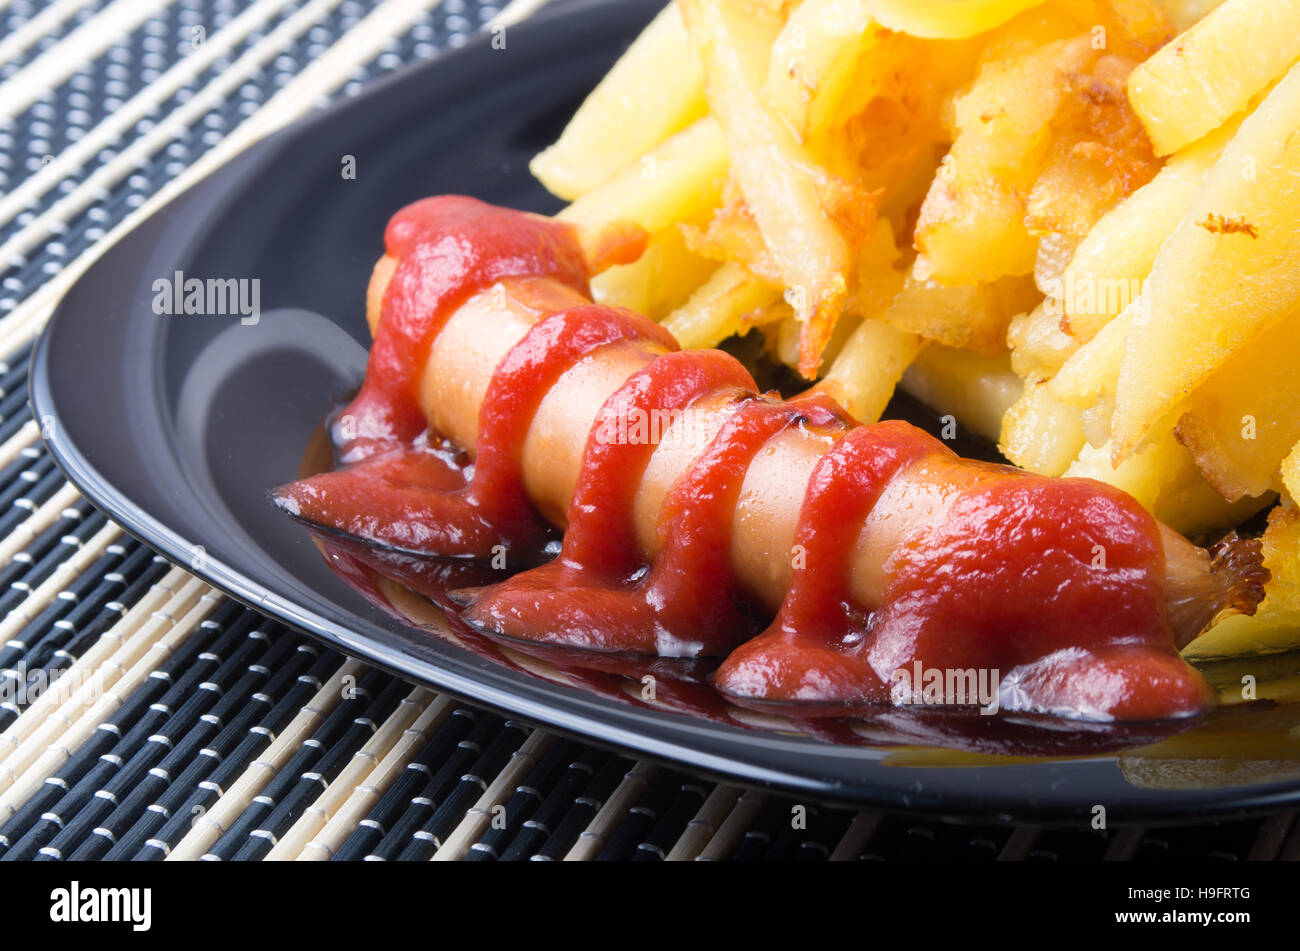 Détail d'une plaque noire avec les saucisses grillées avec sauce tomate et frites close up sur une table à rayures Banque D'Images